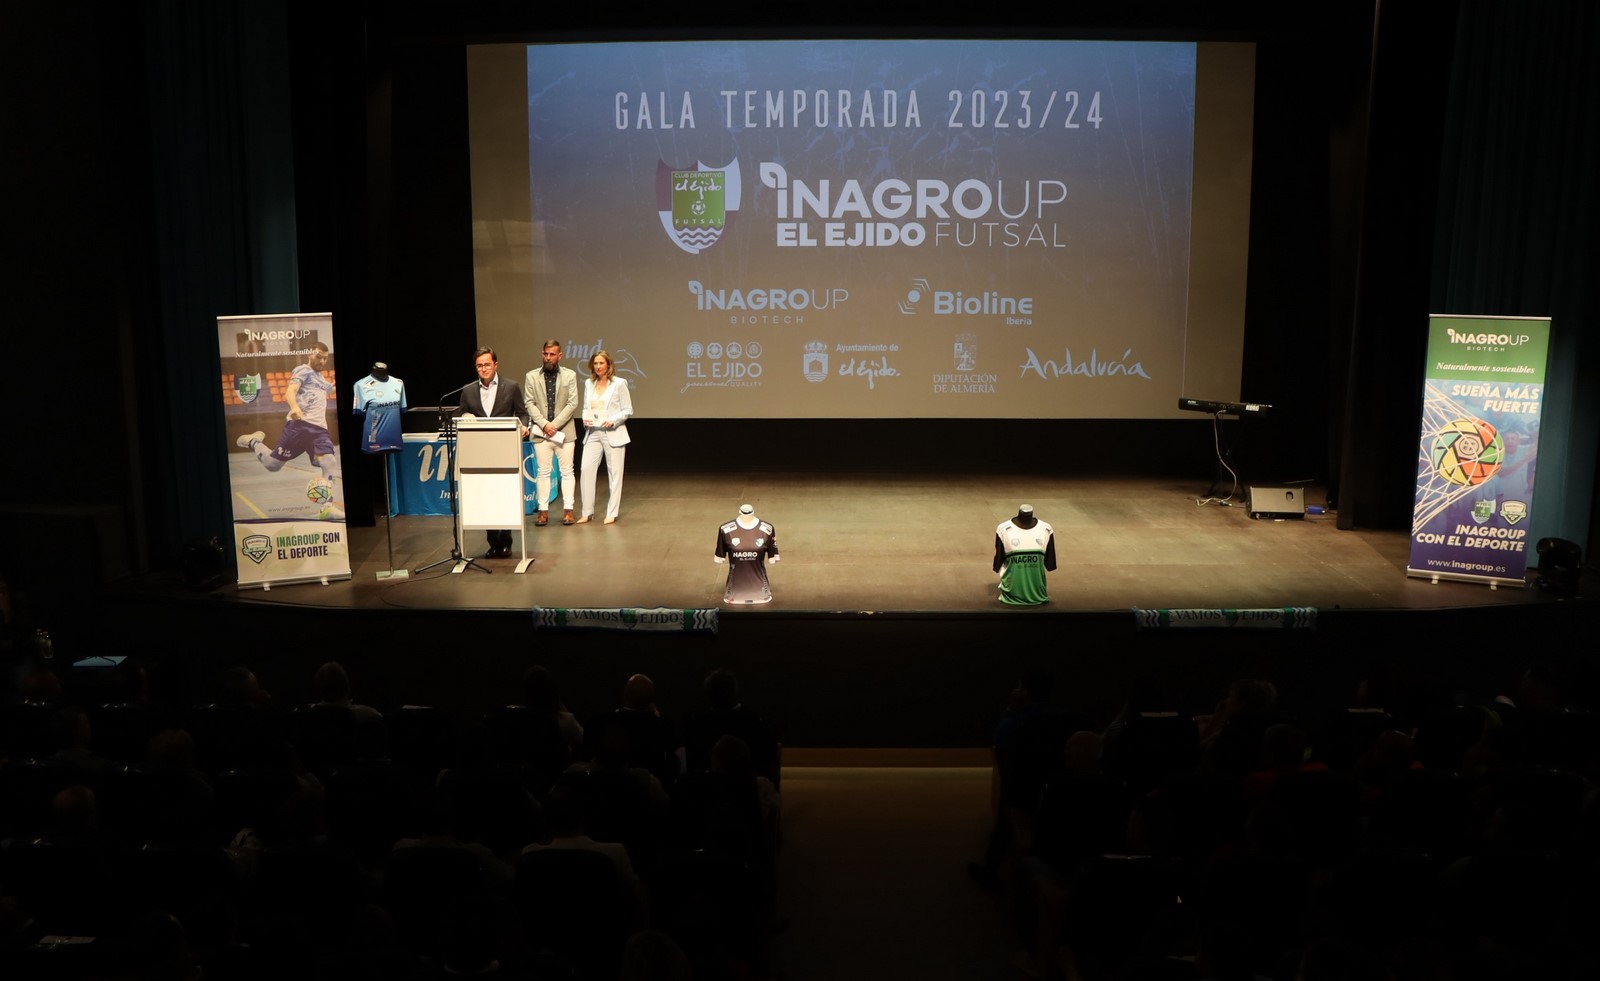 Inagroup El Ejido Futsal reconoce a jugadores, patrocinadores e instituciones en su gala de fin de temporada